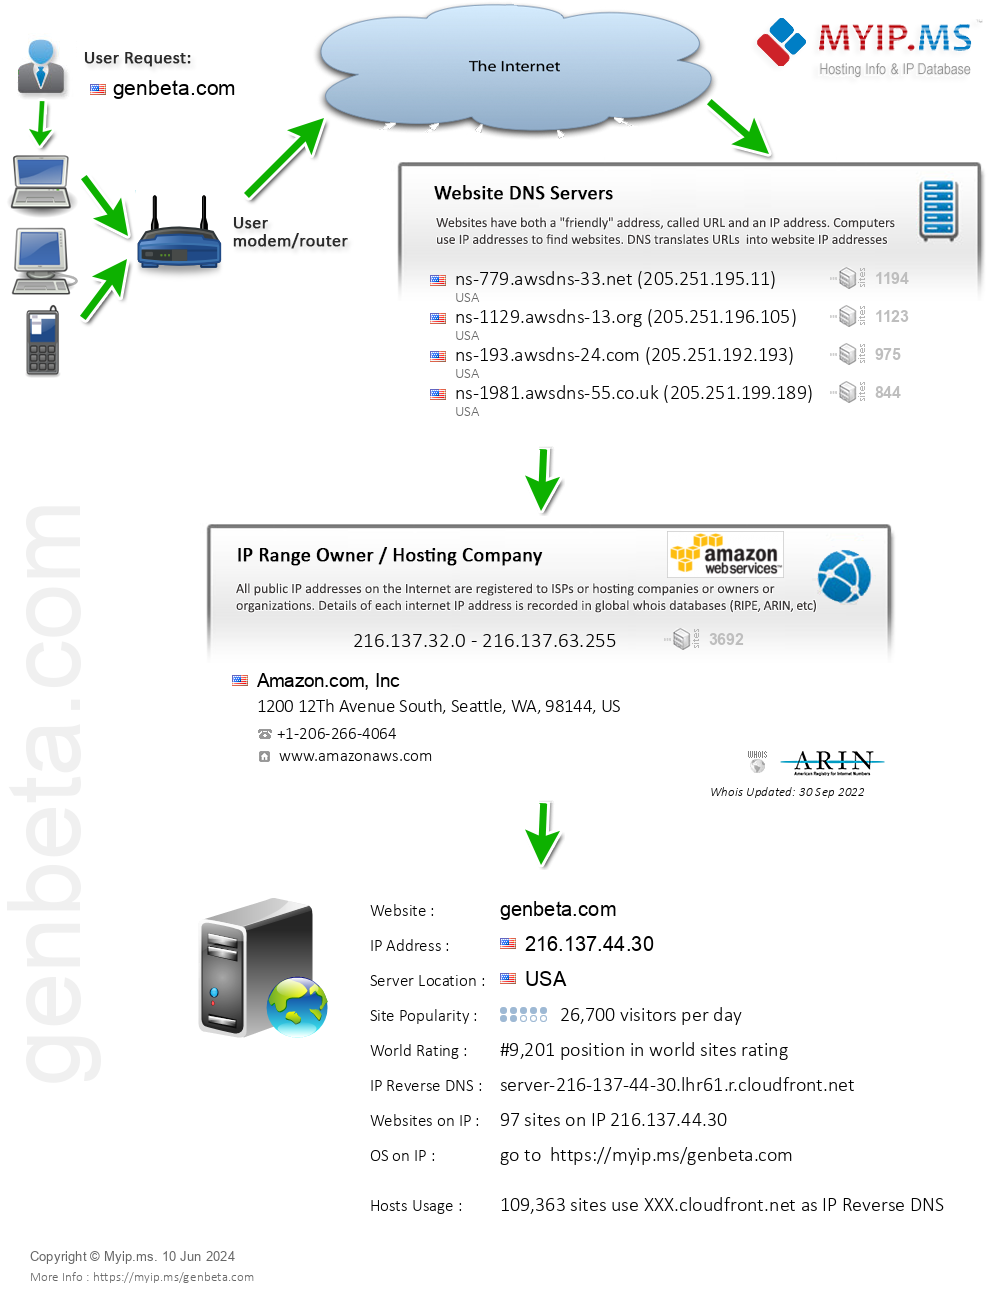 Genbeta.com - Website Hosting Visual IP Diagram